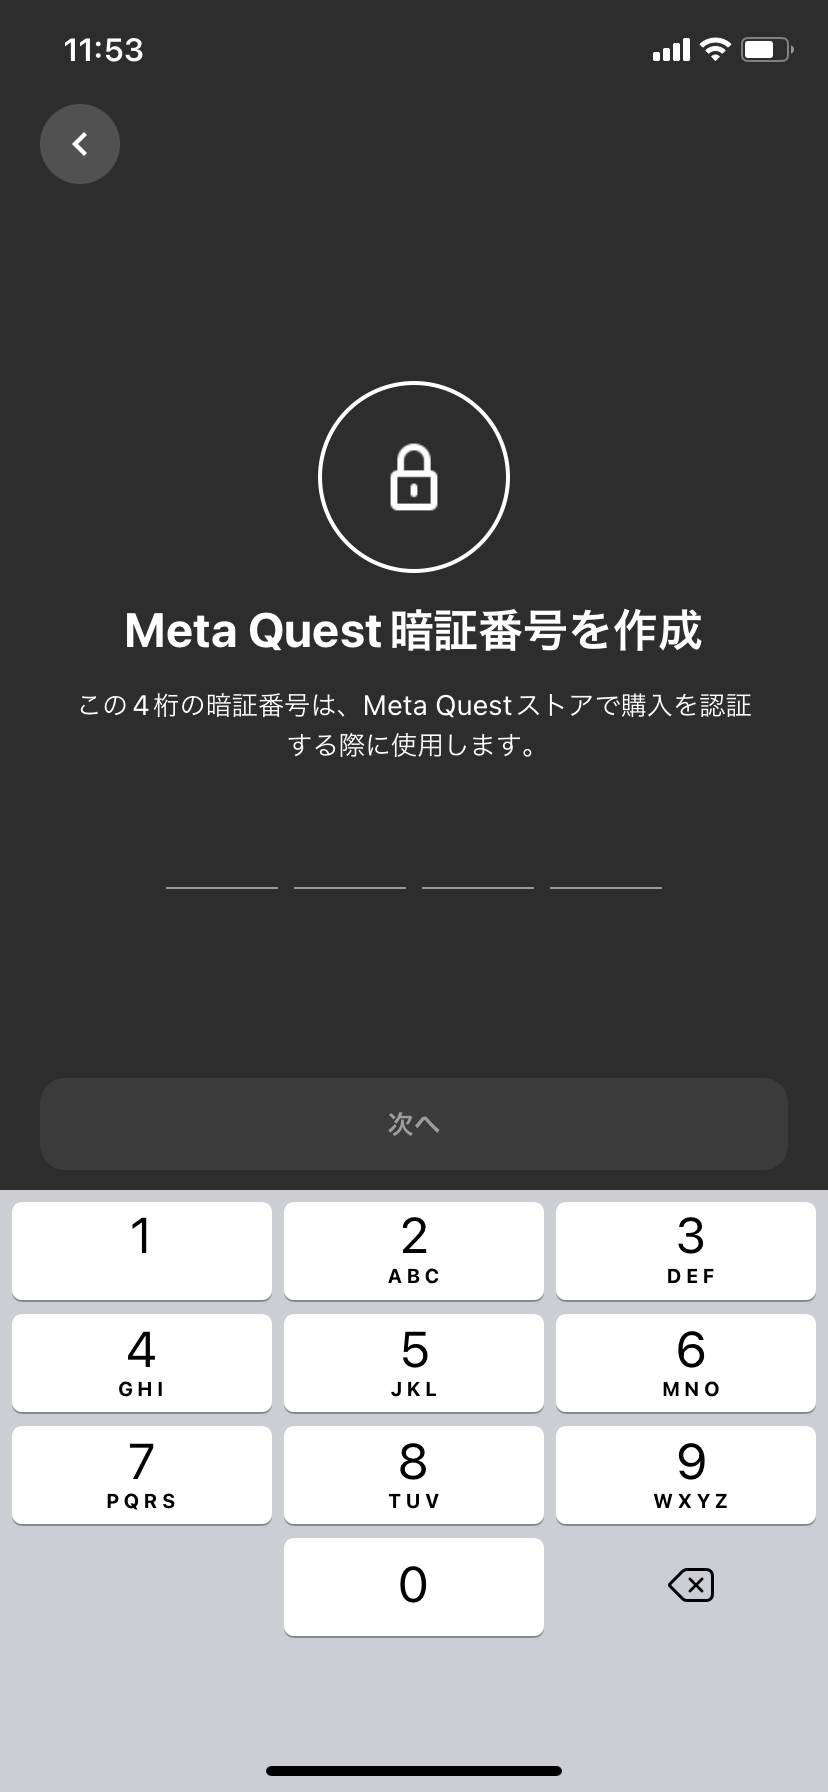 MetaQuest 暗証番号を設定